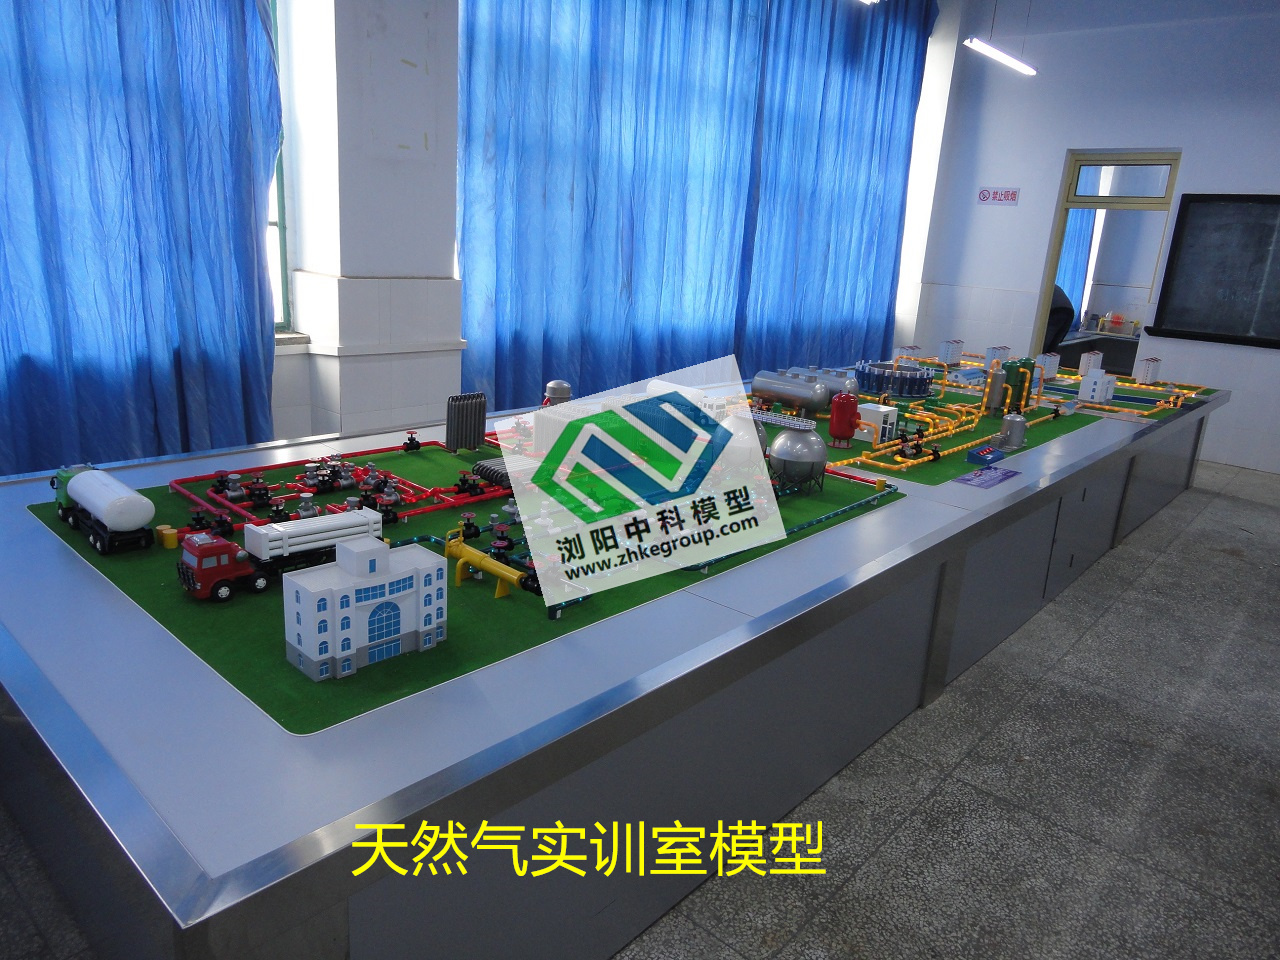 重庆大学城市燃气供应流程模型